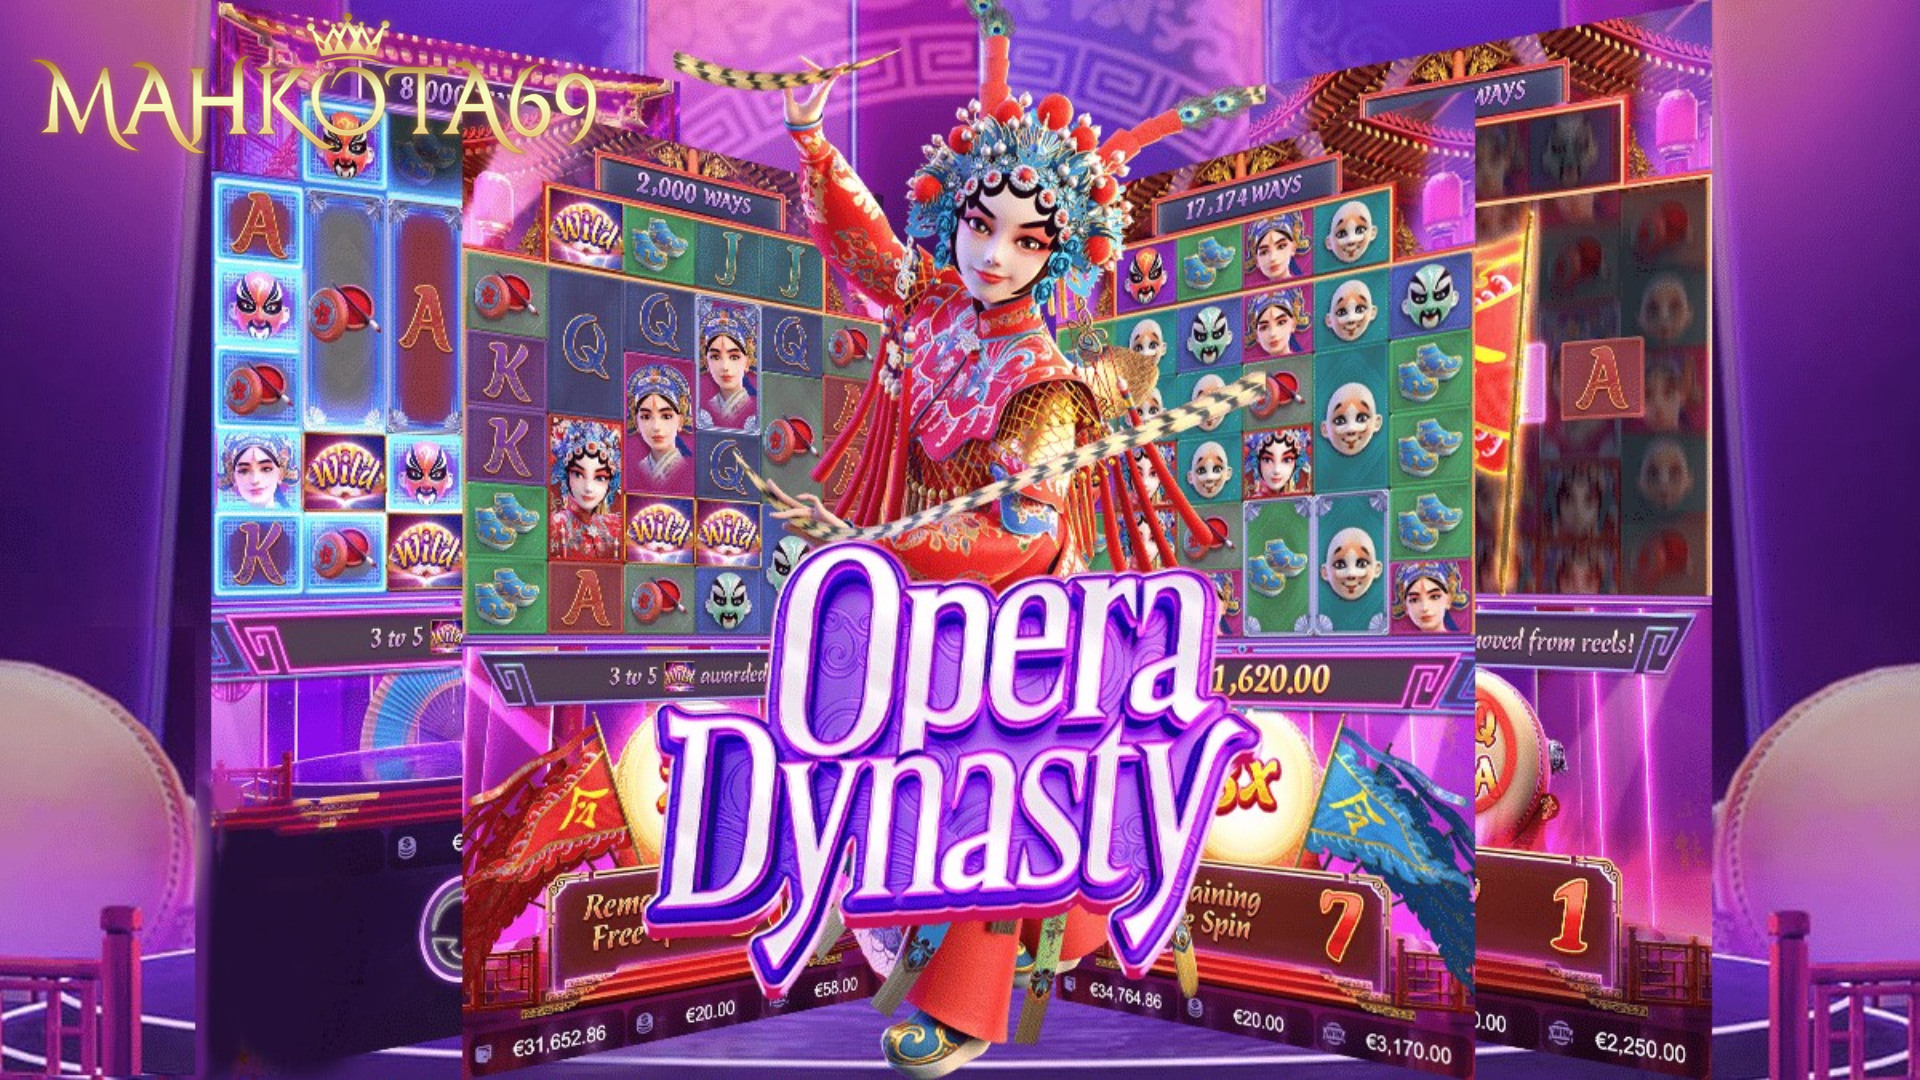 Opera Dynasty Mahkota69